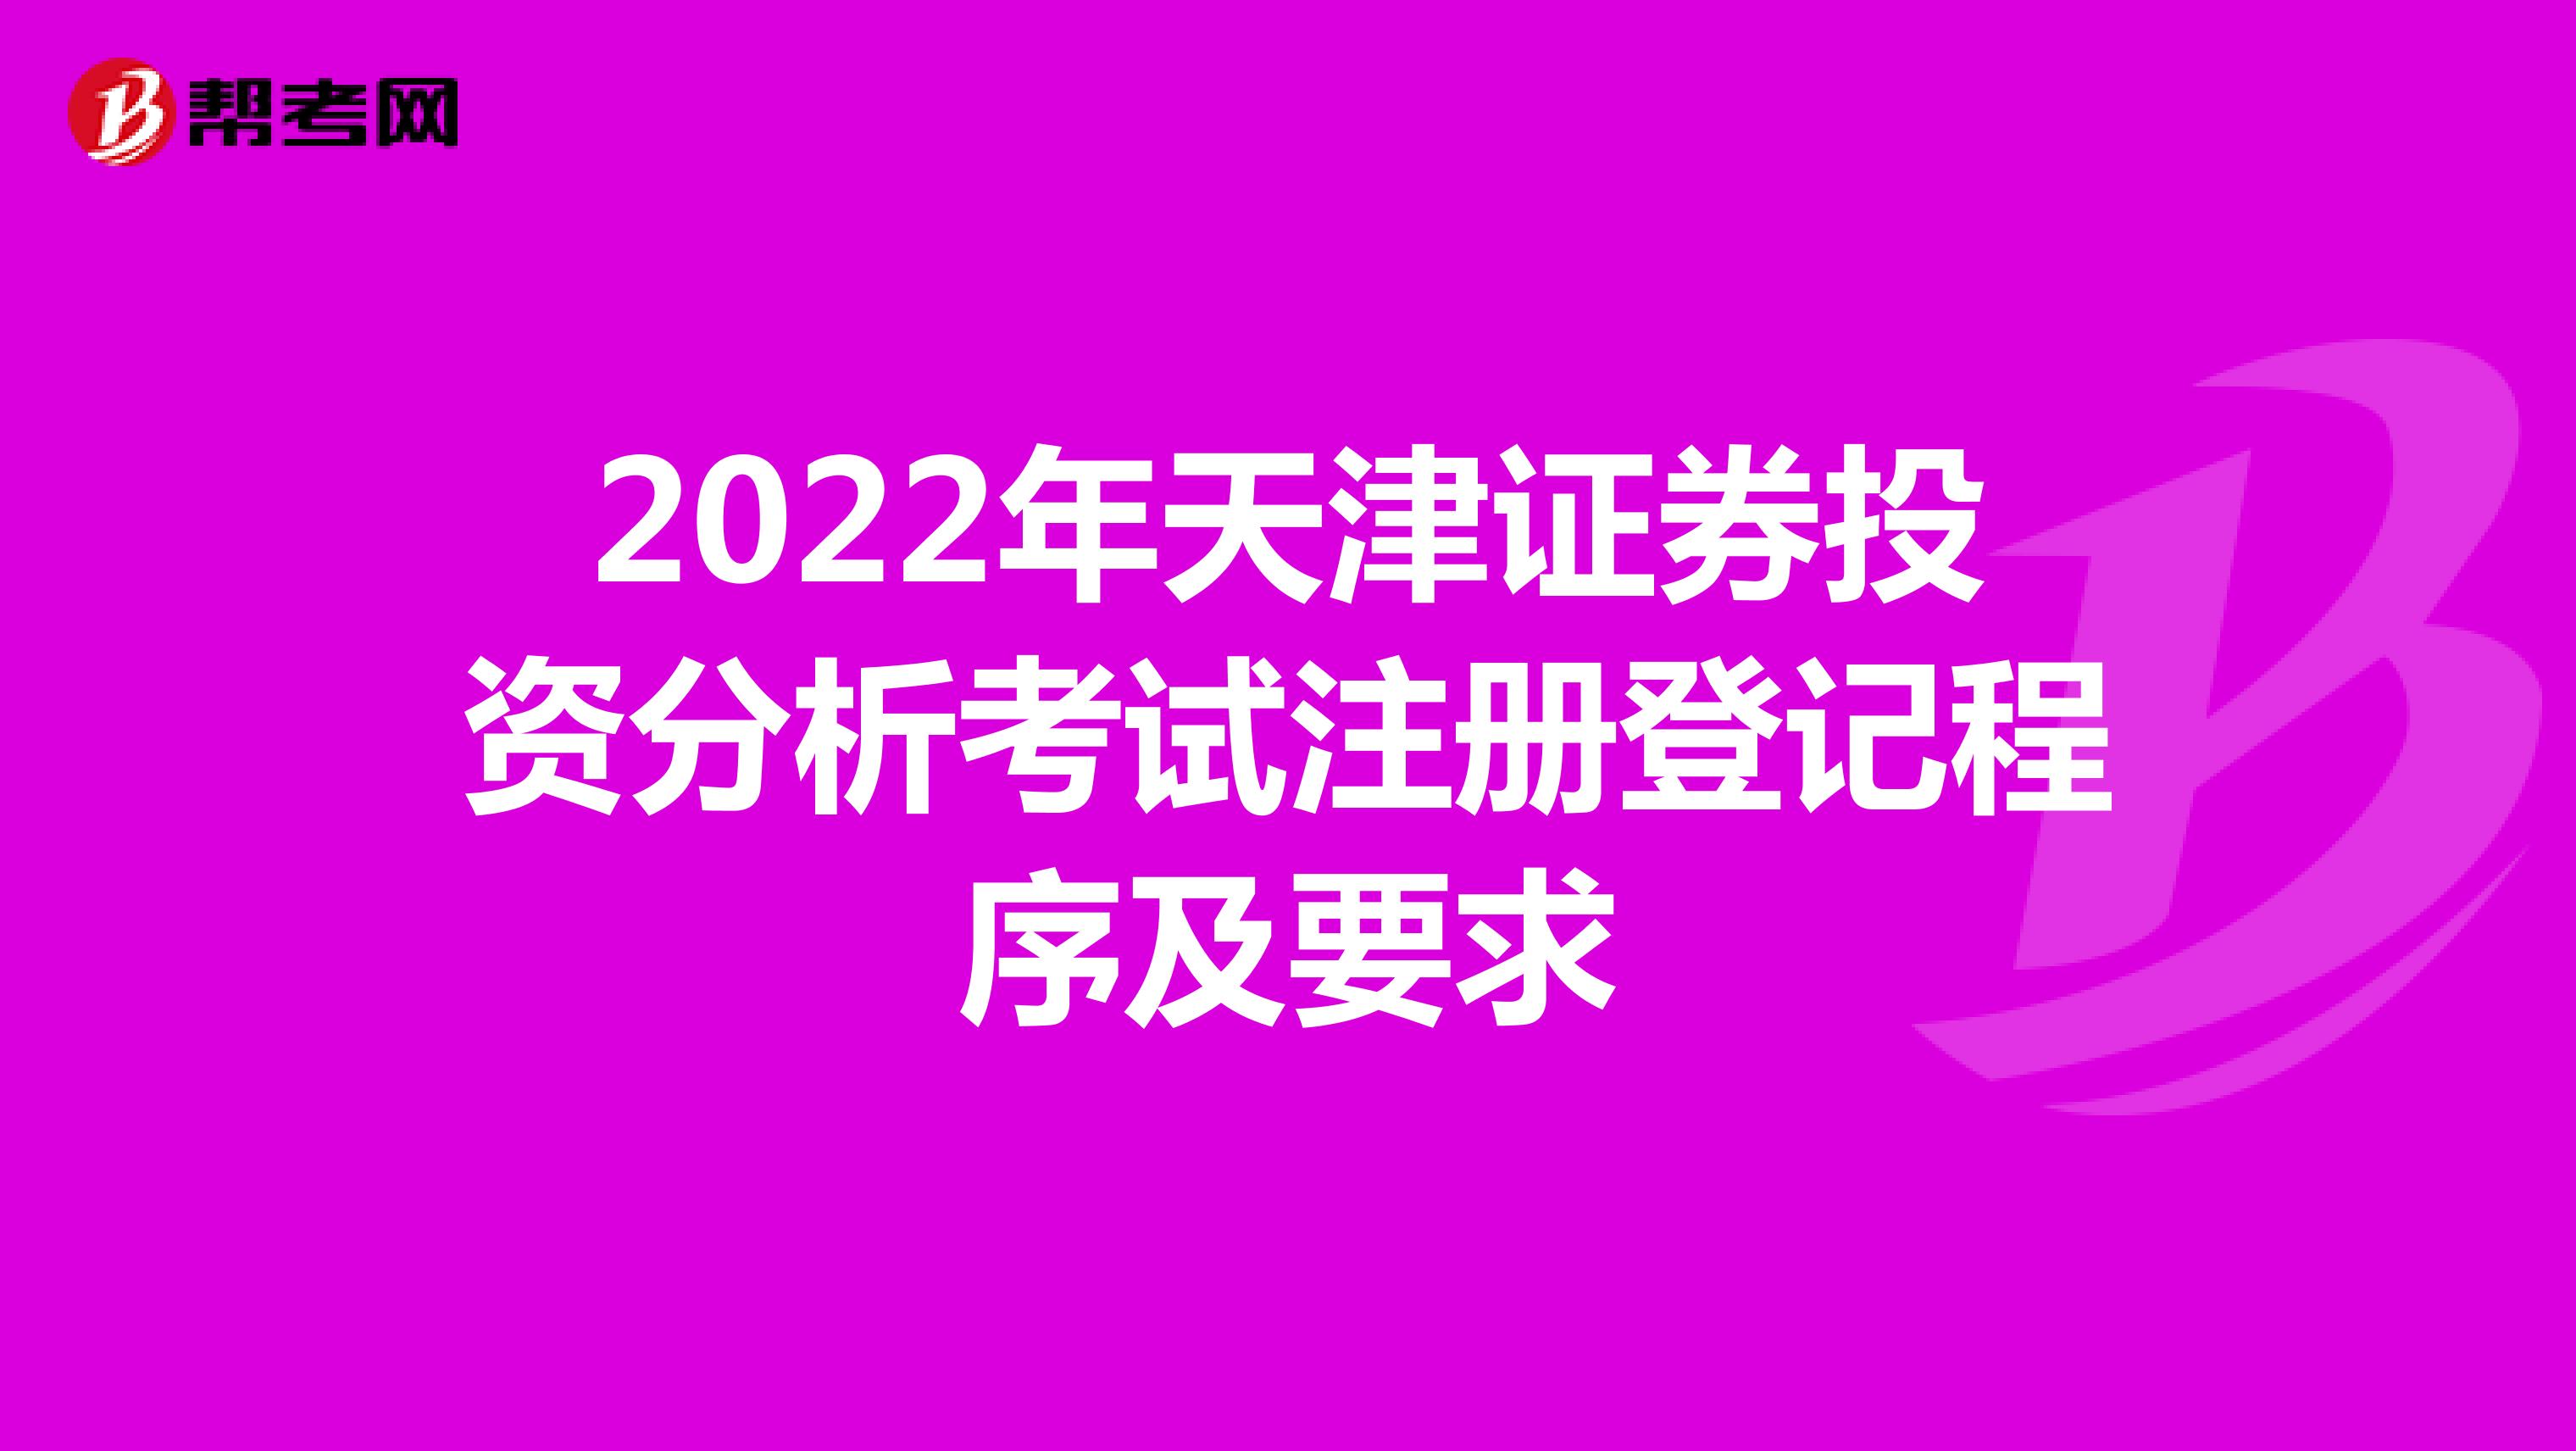 2022年天津证券投资分析考试注册登记程序及要求